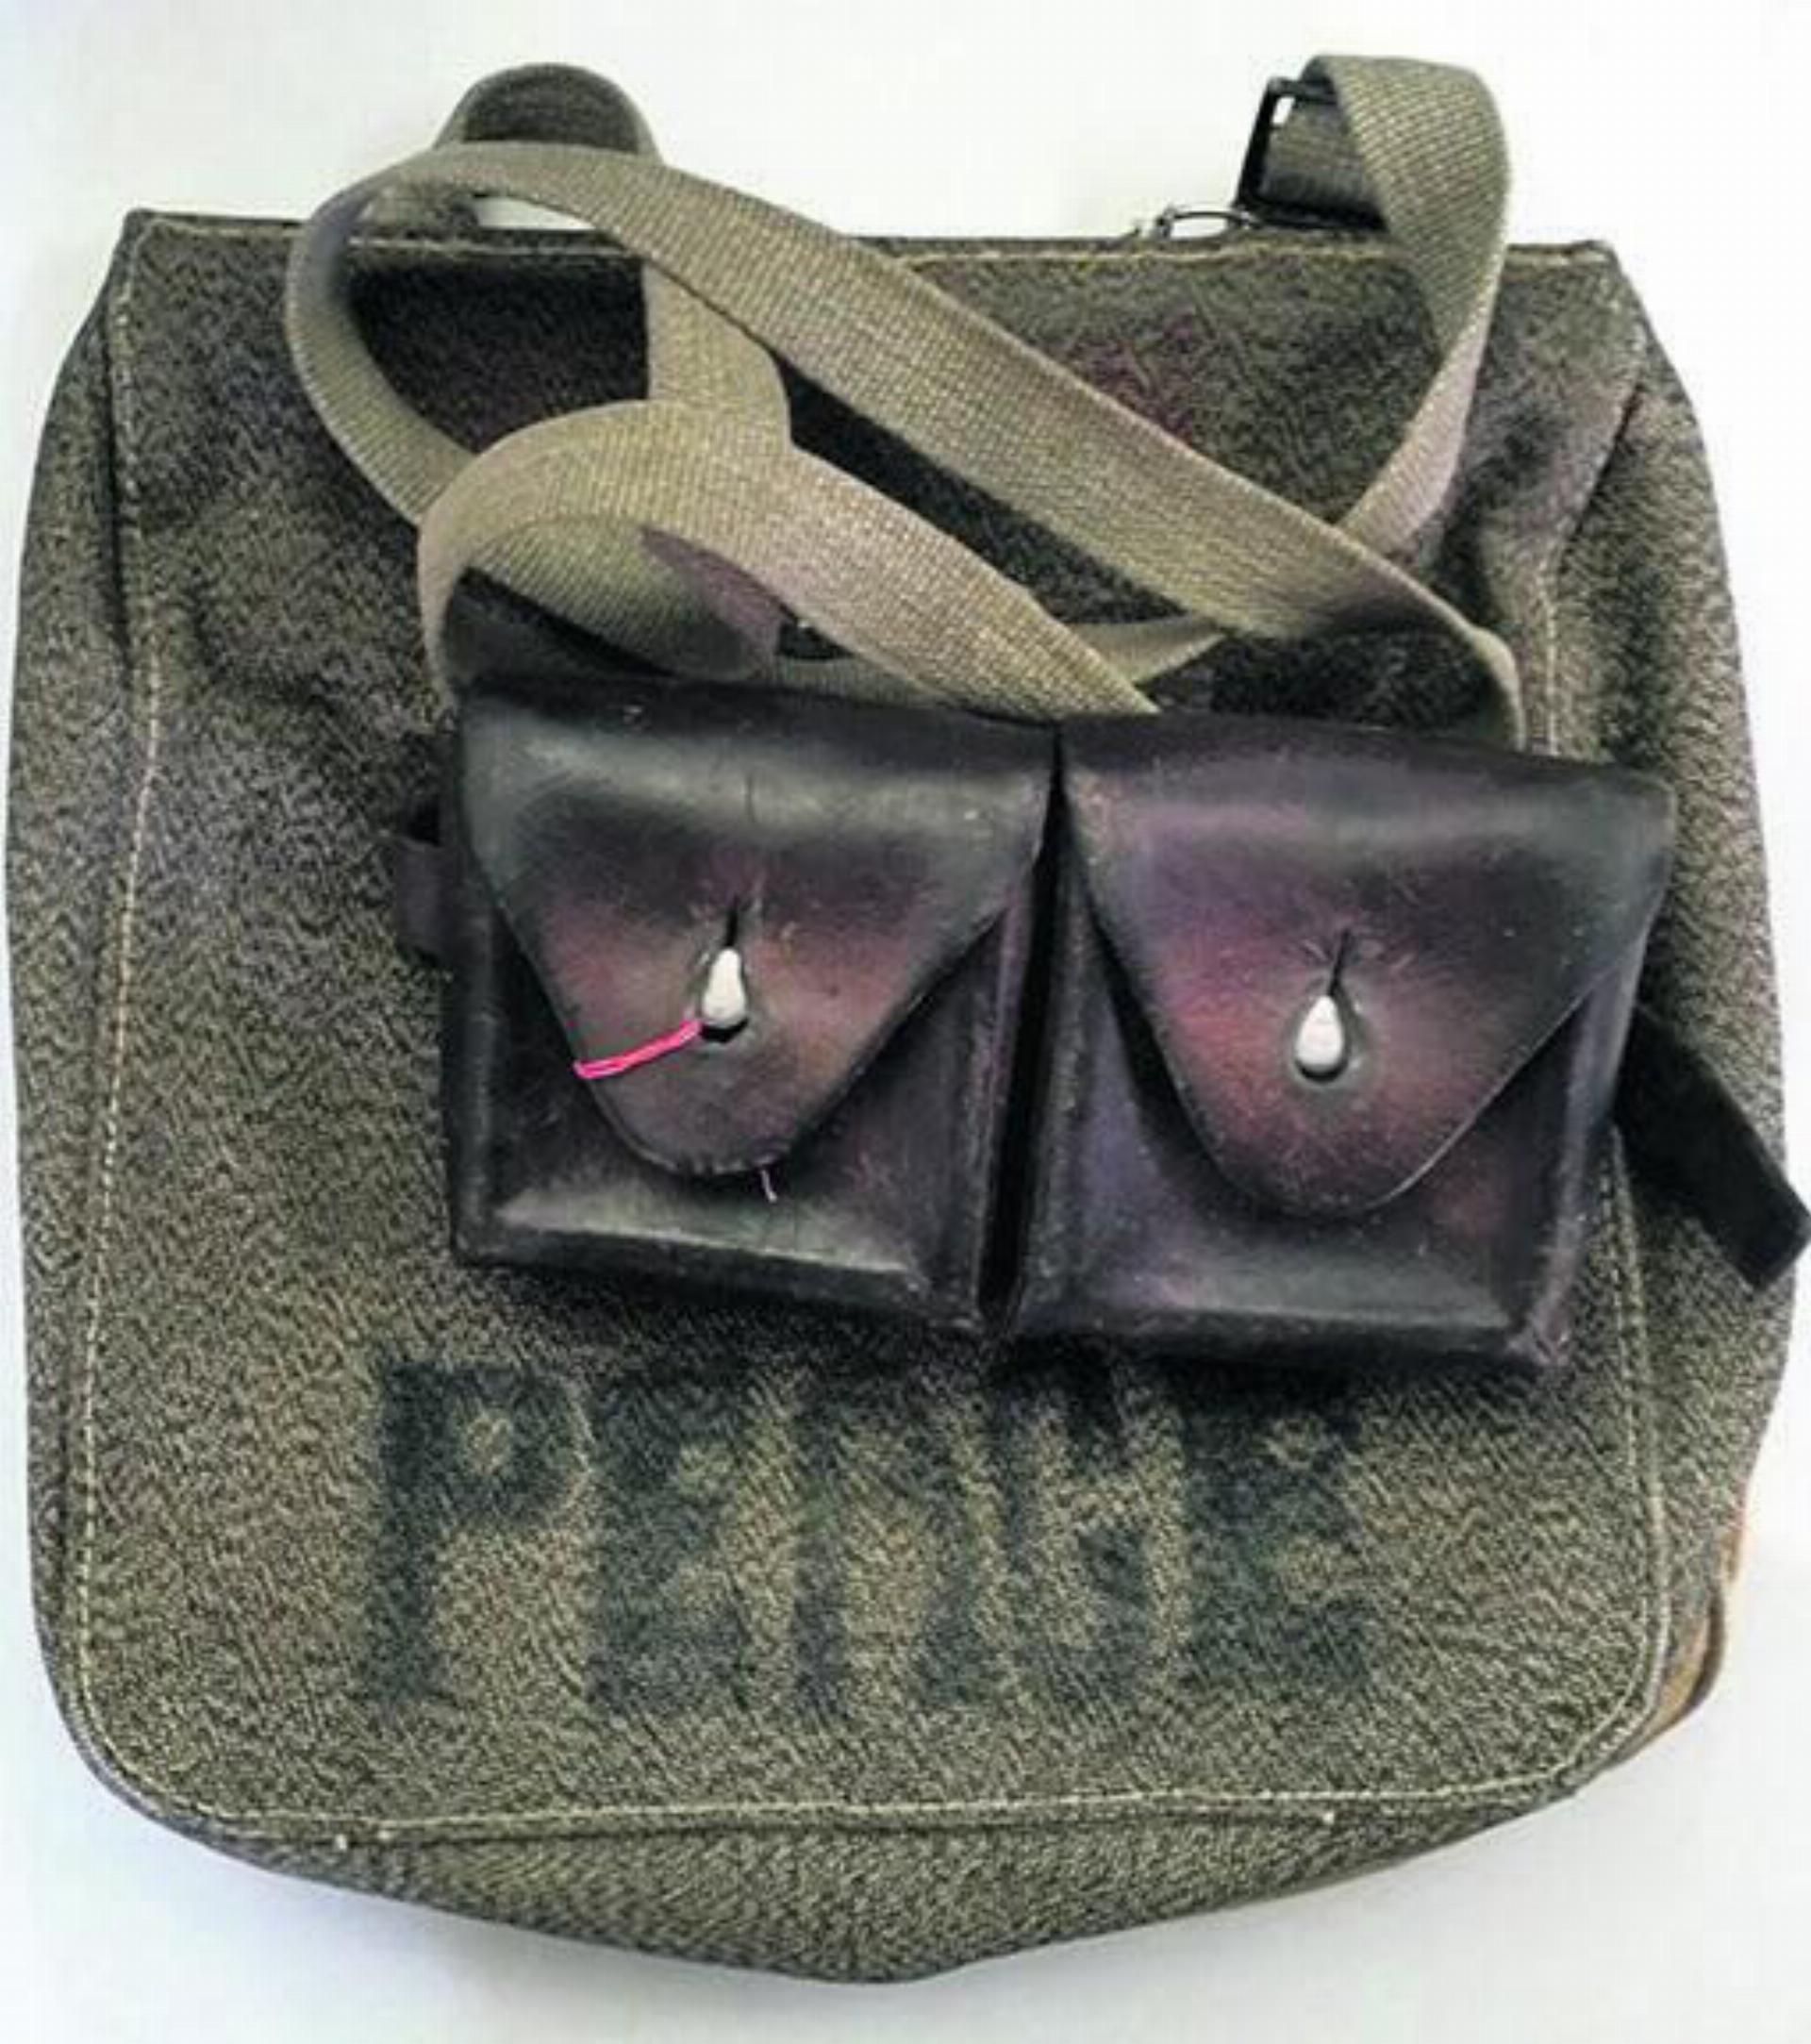 Auch ein Neuzugang: Mit «PEACE» beschrifteter Brotsack aus dem Zweiten Weltkrieg mit befestigter Patronentasche. Foto: zVg